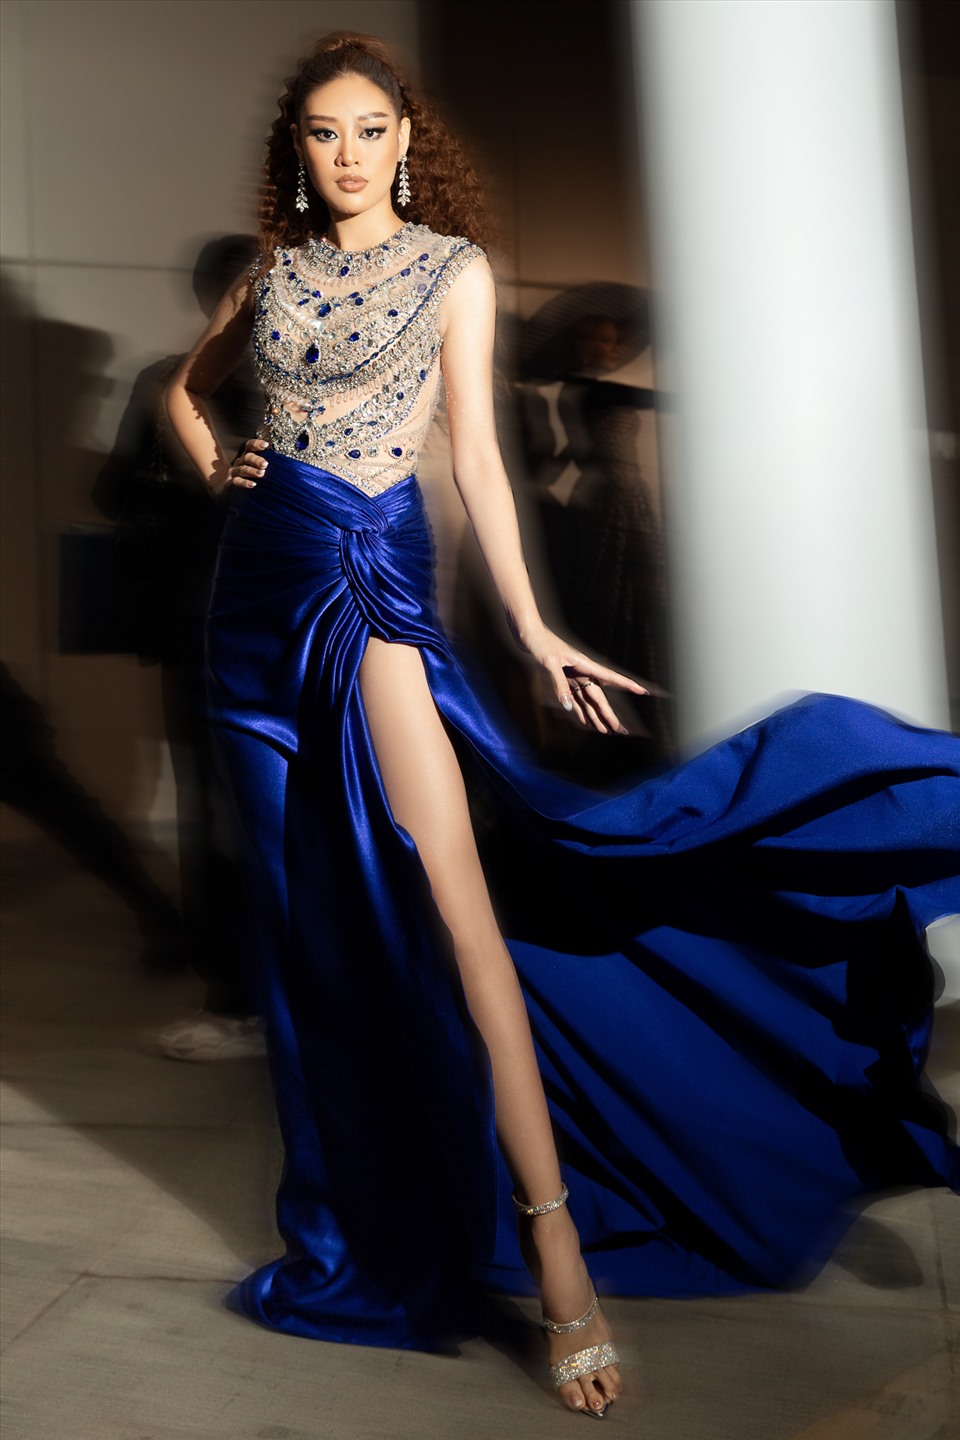 Cô cho biết thời gian qua nhiều khán giả gợi ý Khánh Vân nên thử mặc trang phục màu xanh dương, nếu hợp thì mang đến Miss Universe 2020. Khánh Vân bật mí cô đã có những phương án về trang phục dạ hội, nhưng ekip sẽ lắng nghe góp ý của khán giả để có một trang phục ưng ý và phù hợp nhất.